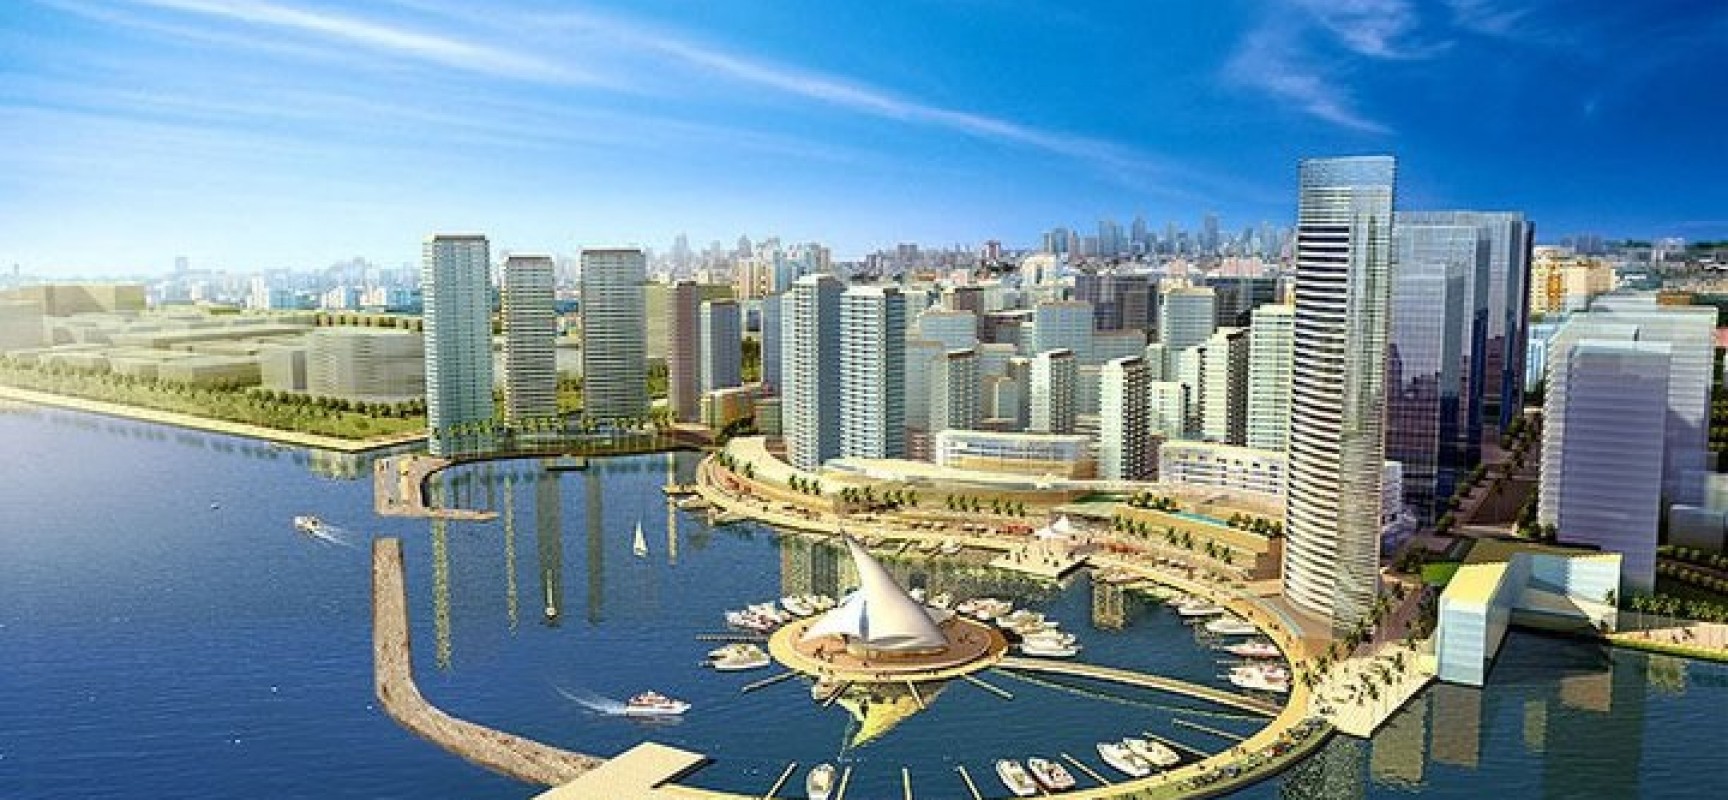 The Global Mega City of The Future